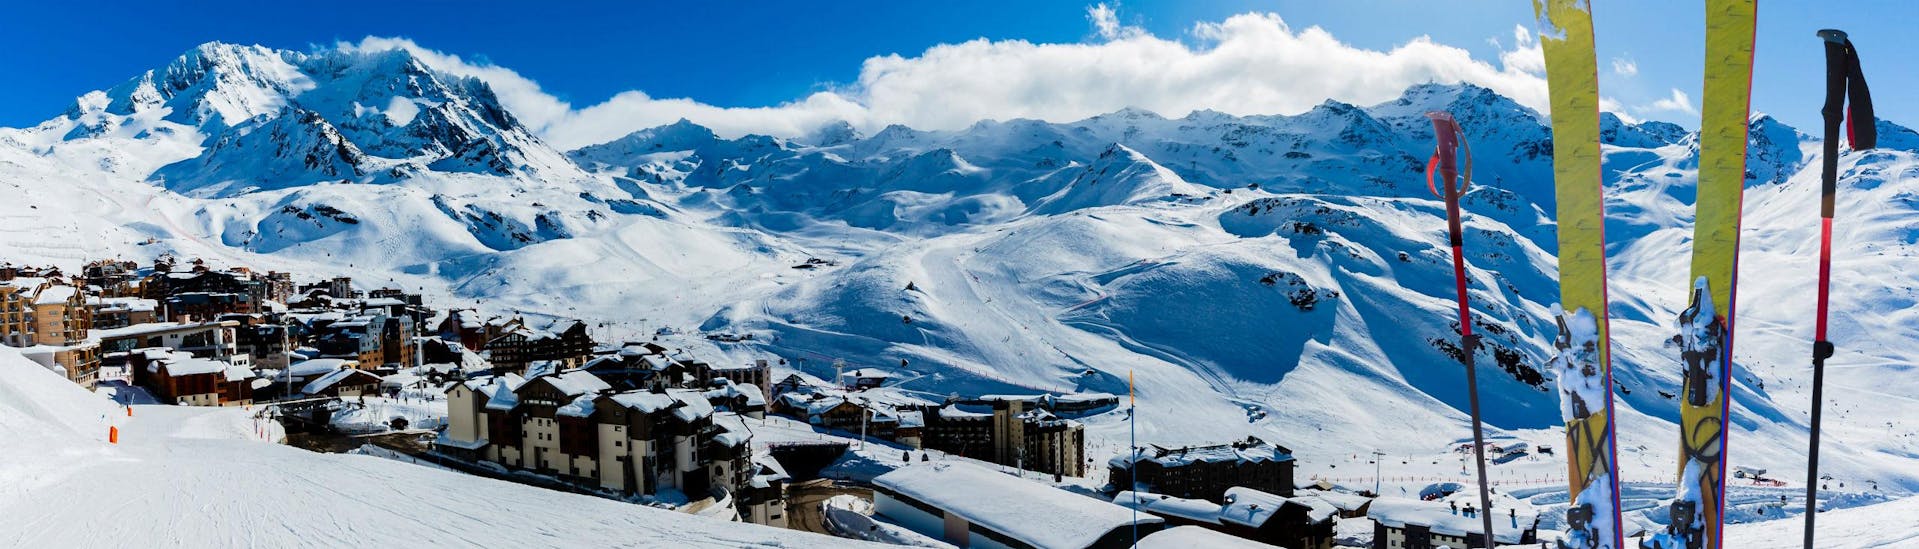 Una vista panoramica del paesaggio montano mentre le persone imparano a siare grazie alle lezioni di sci di una scuola di sci locale presso Les 3 Vallées.